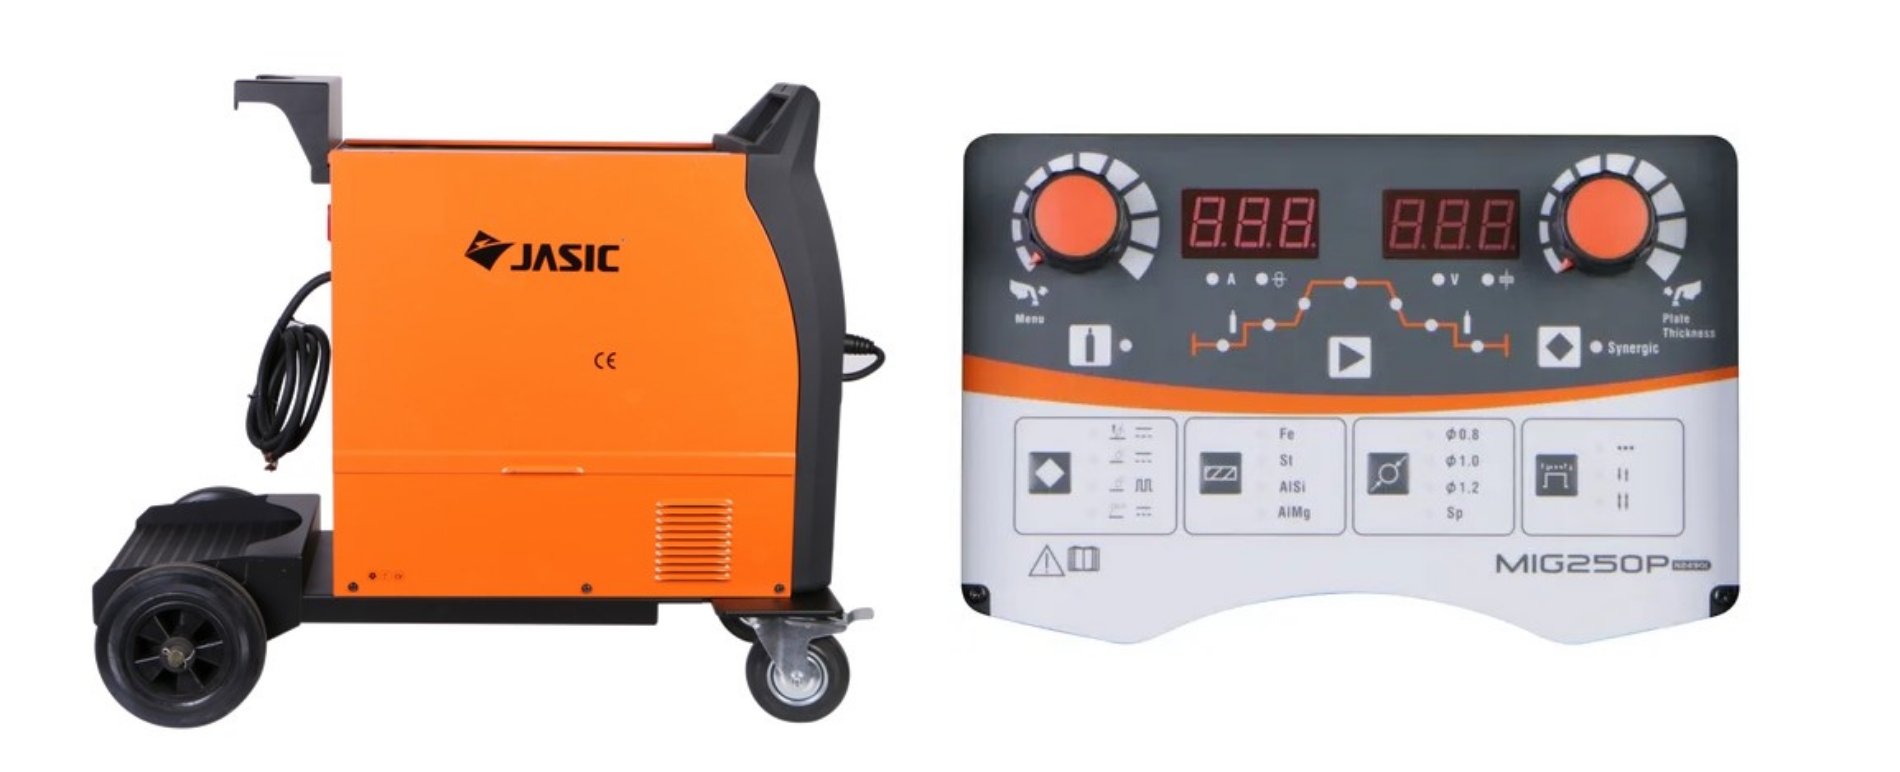 JASIC MIG 250 Pulse Inverter Mig Welder 230V 3